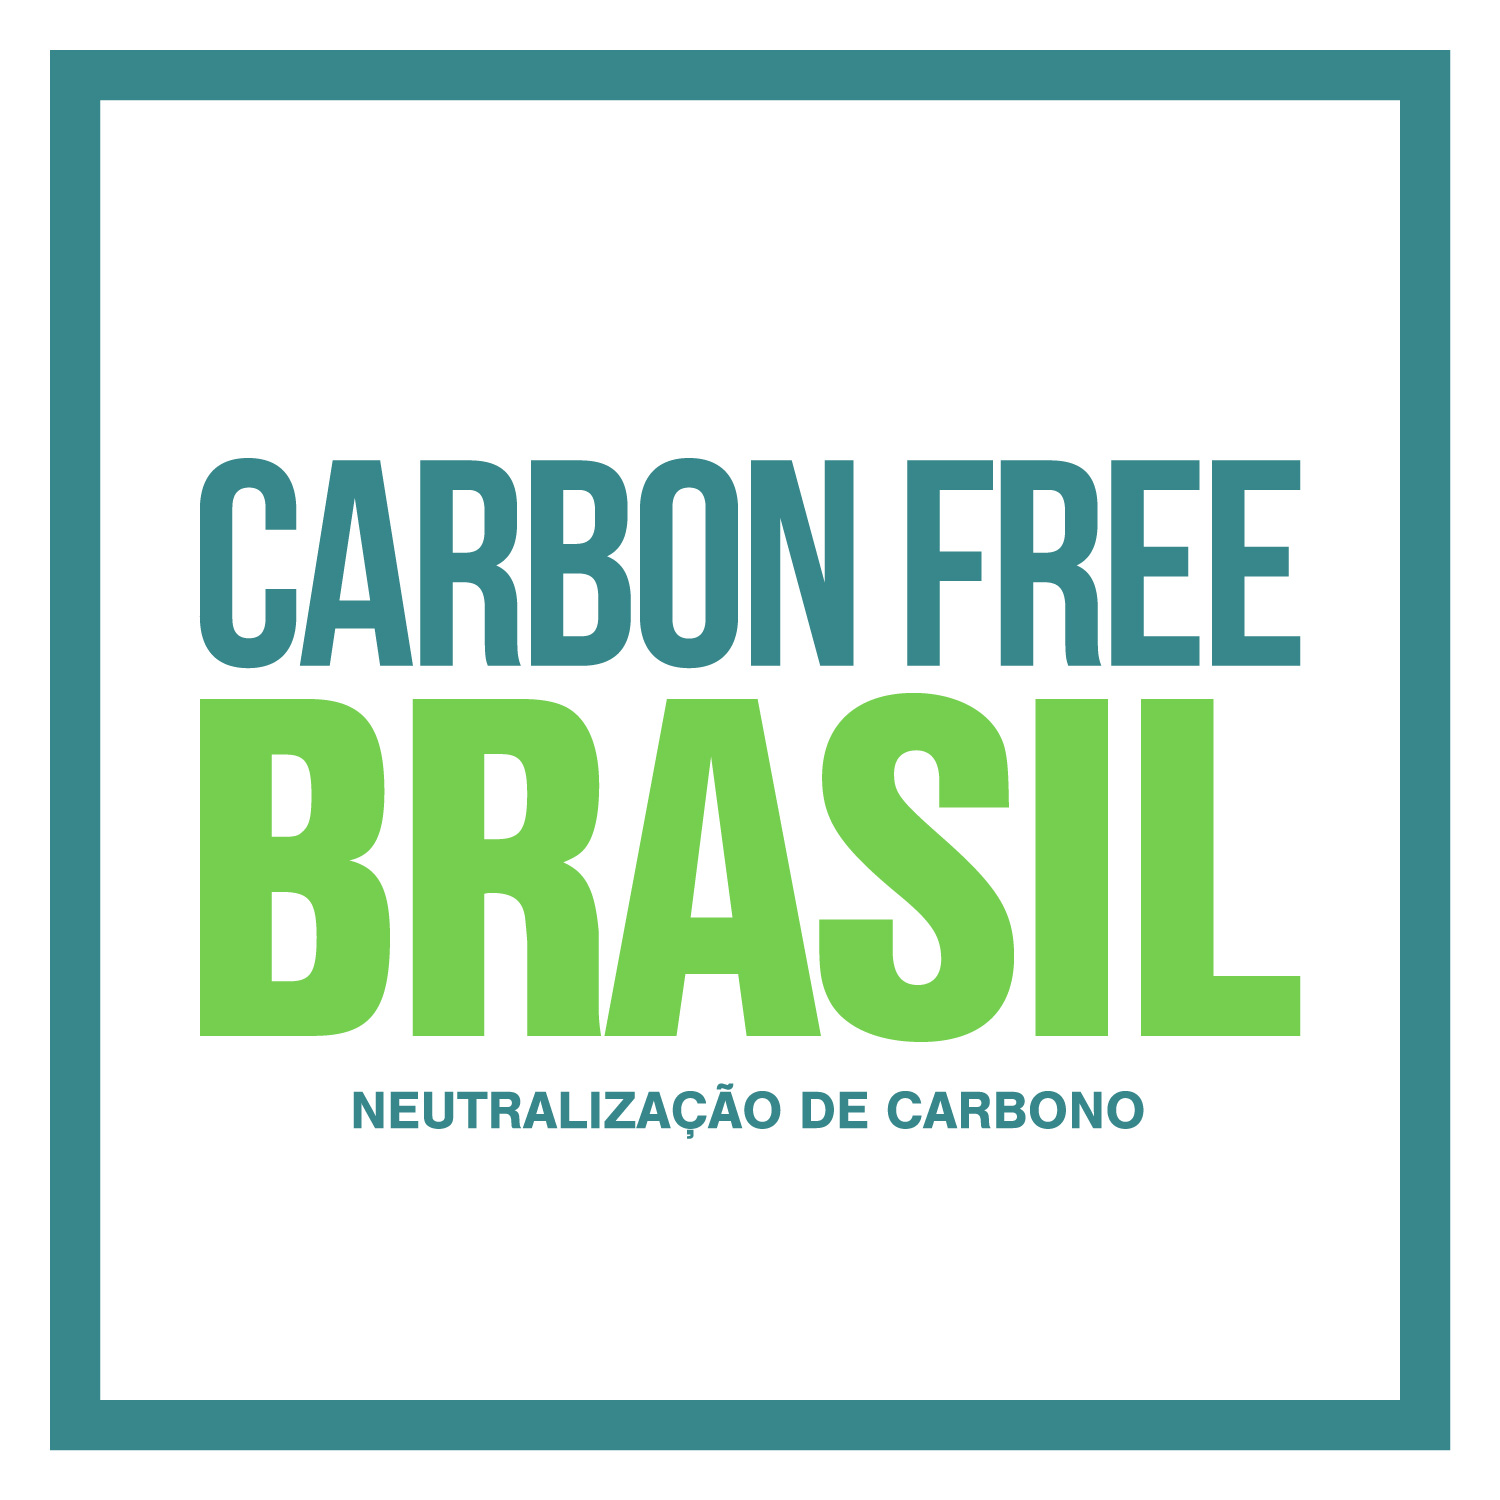 Selo Carbon free. Quadrado com margem verde, com fundo branco e com o texto centralizado 